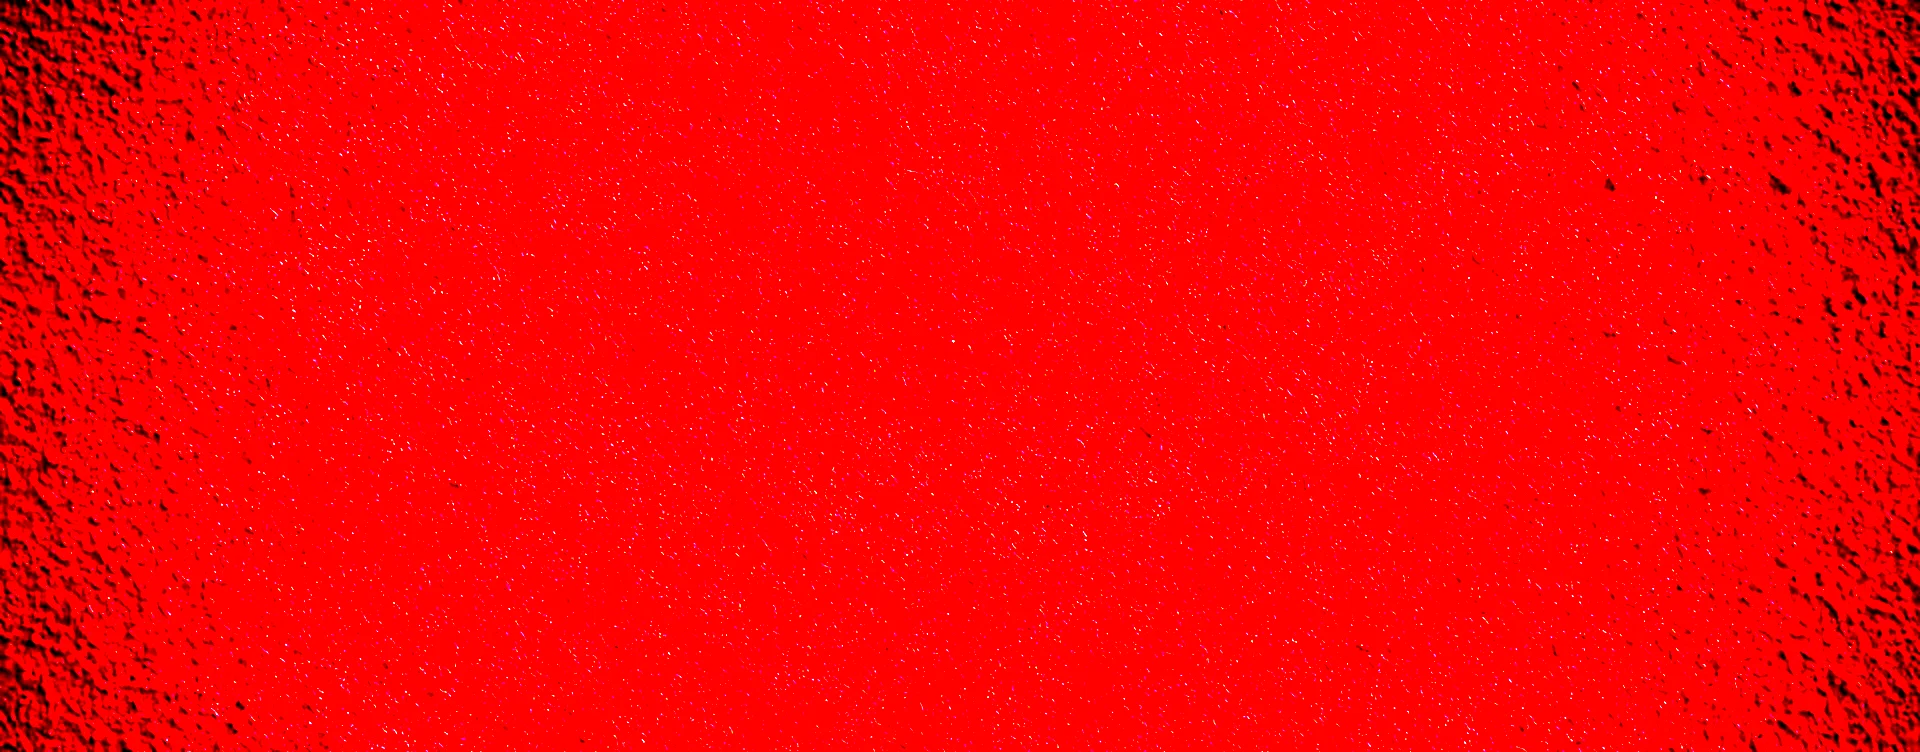 Красная штукатурка текстура